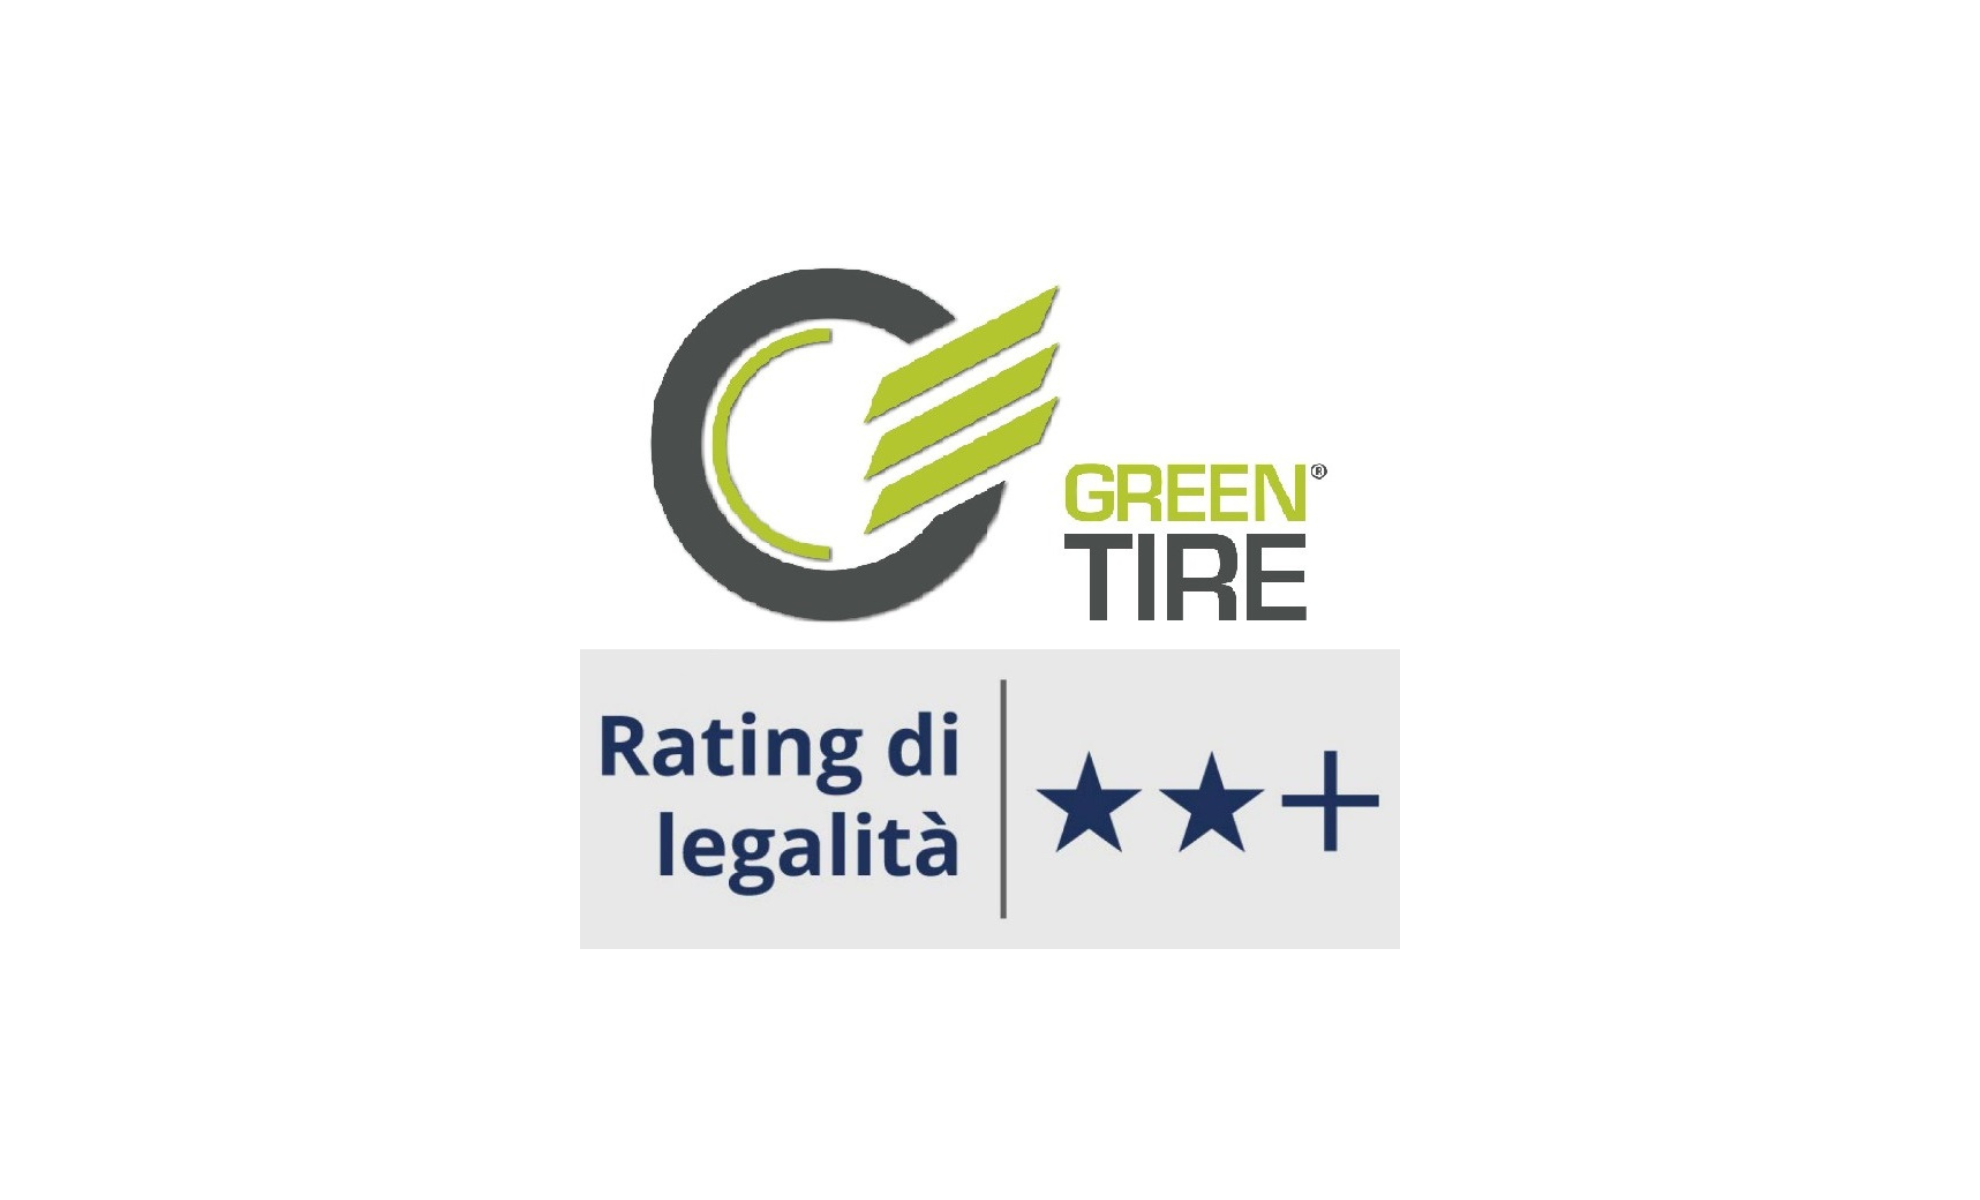 Greentire ottiene il riconoscimento del Rating di Legalità dell’Autorità Garante della Concorrenza e del Mercato (AGCM)